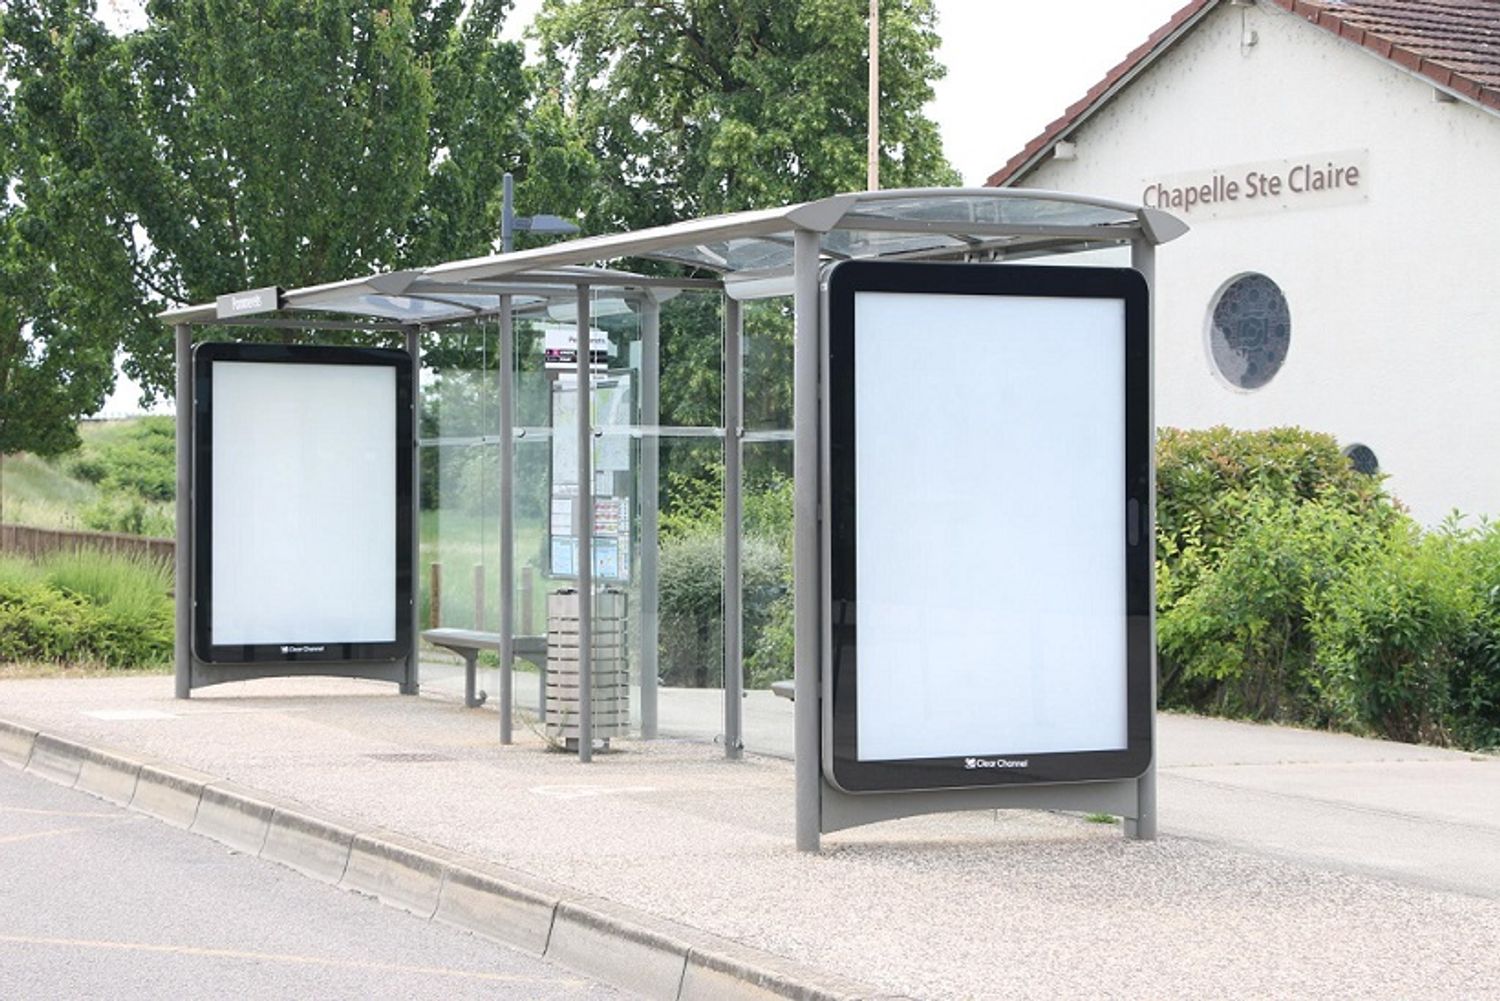 1 000 affiches publicitaires d’abris à bus et panneaux tournants ont été retirés à Dijon 